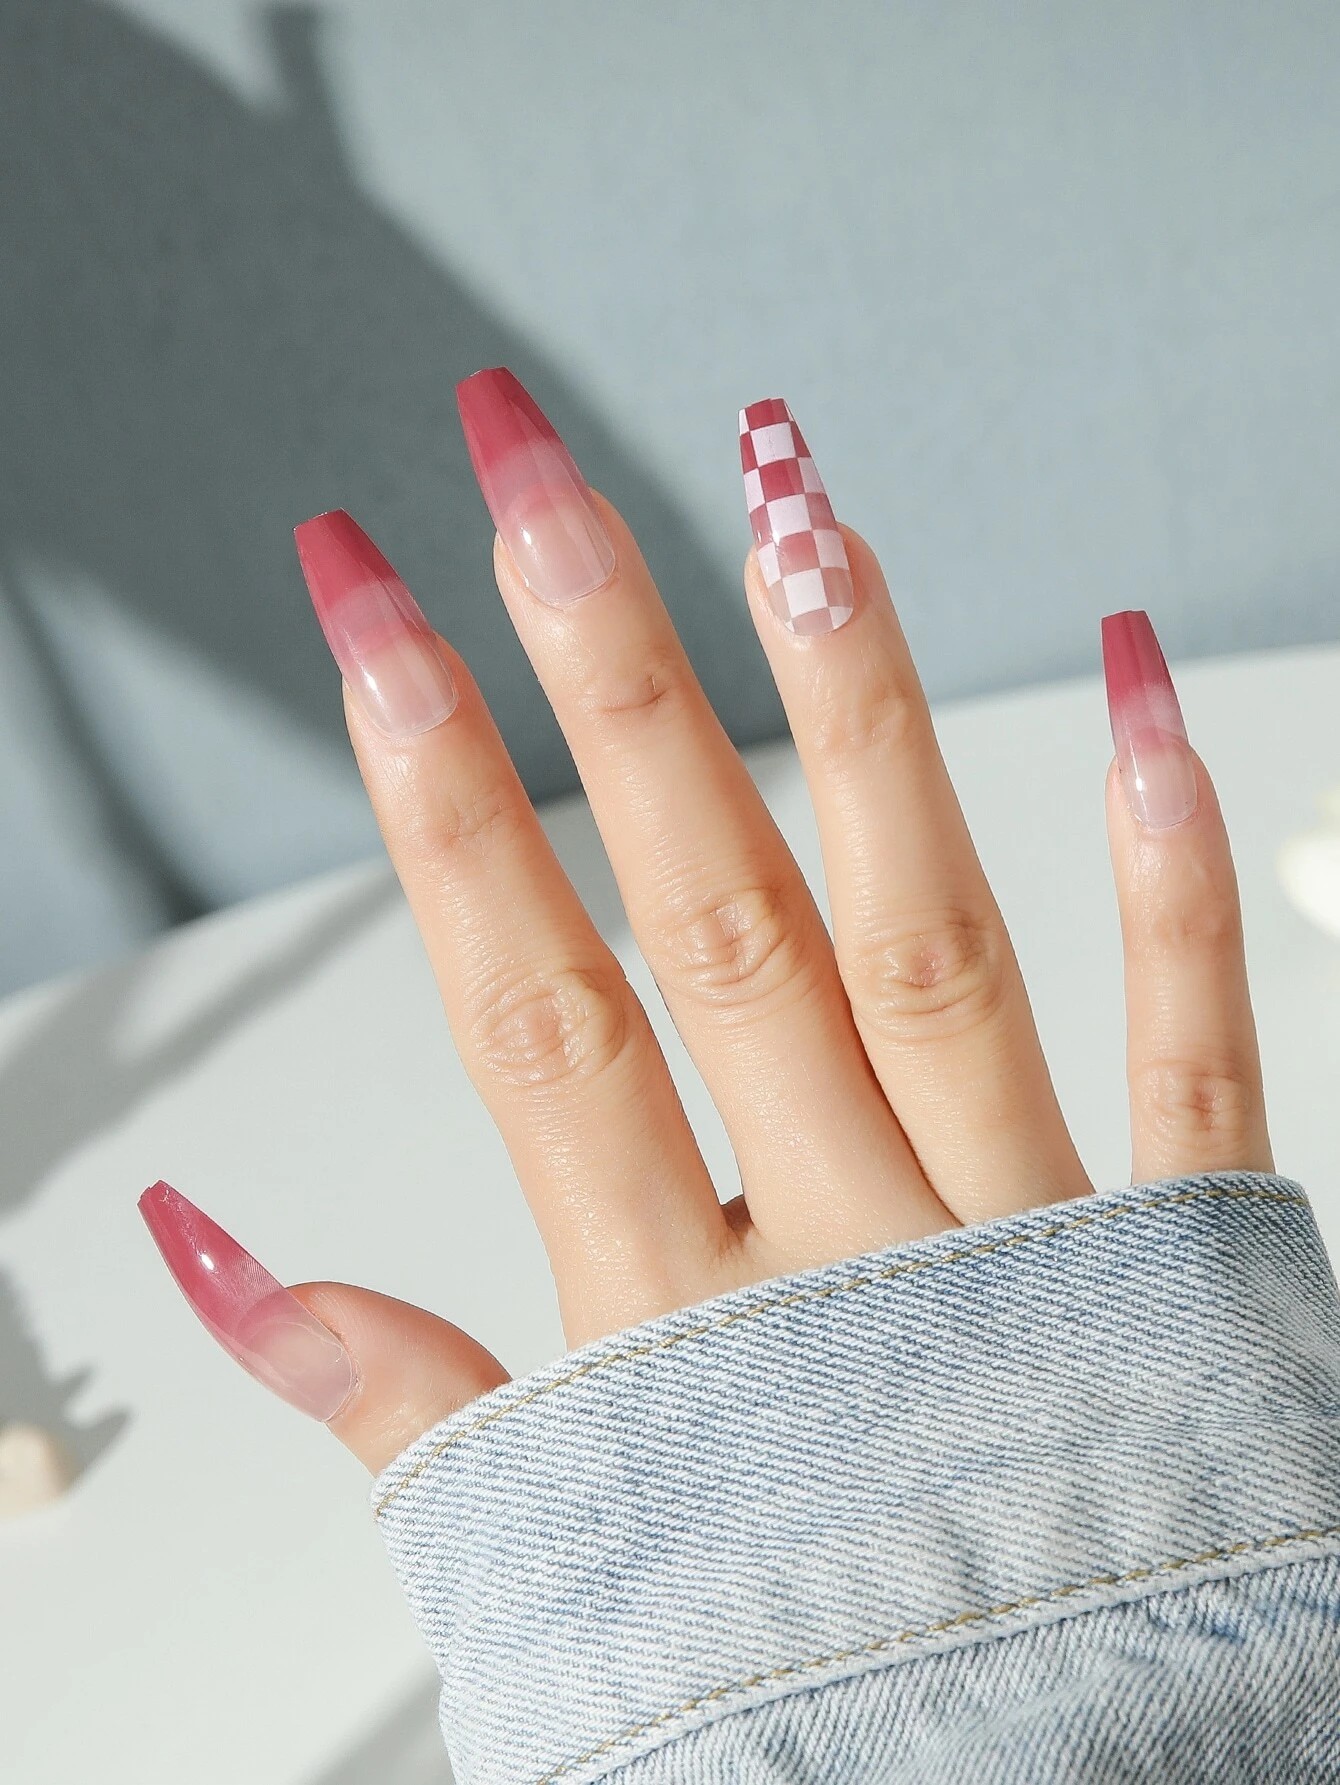 Tham khảo 100 kiểu nail màu hồng sành điệu cuốn hút